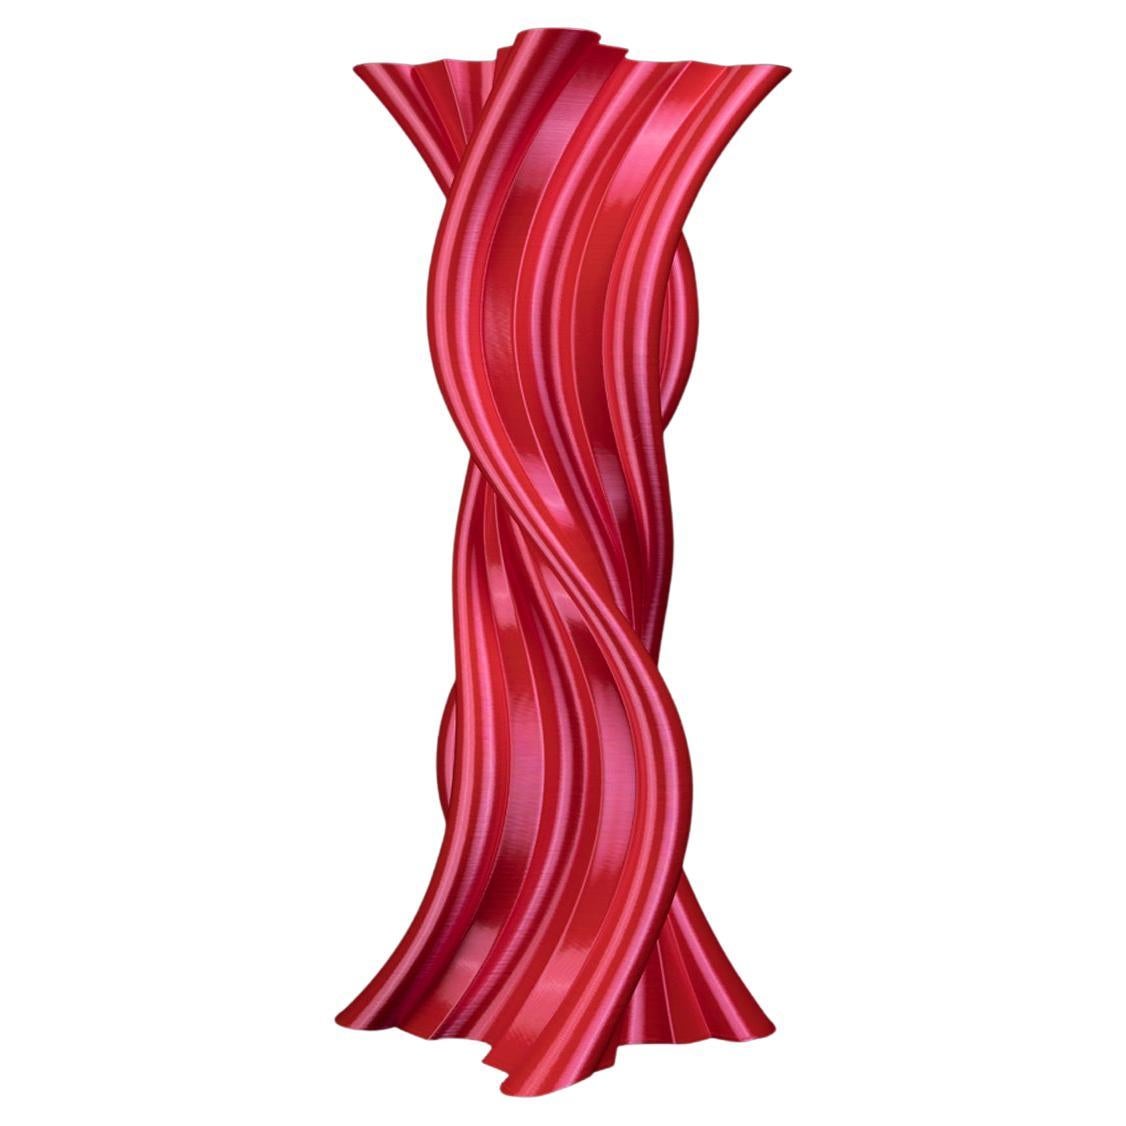 Tersicore, vase-sculpture rouge contemporain durable